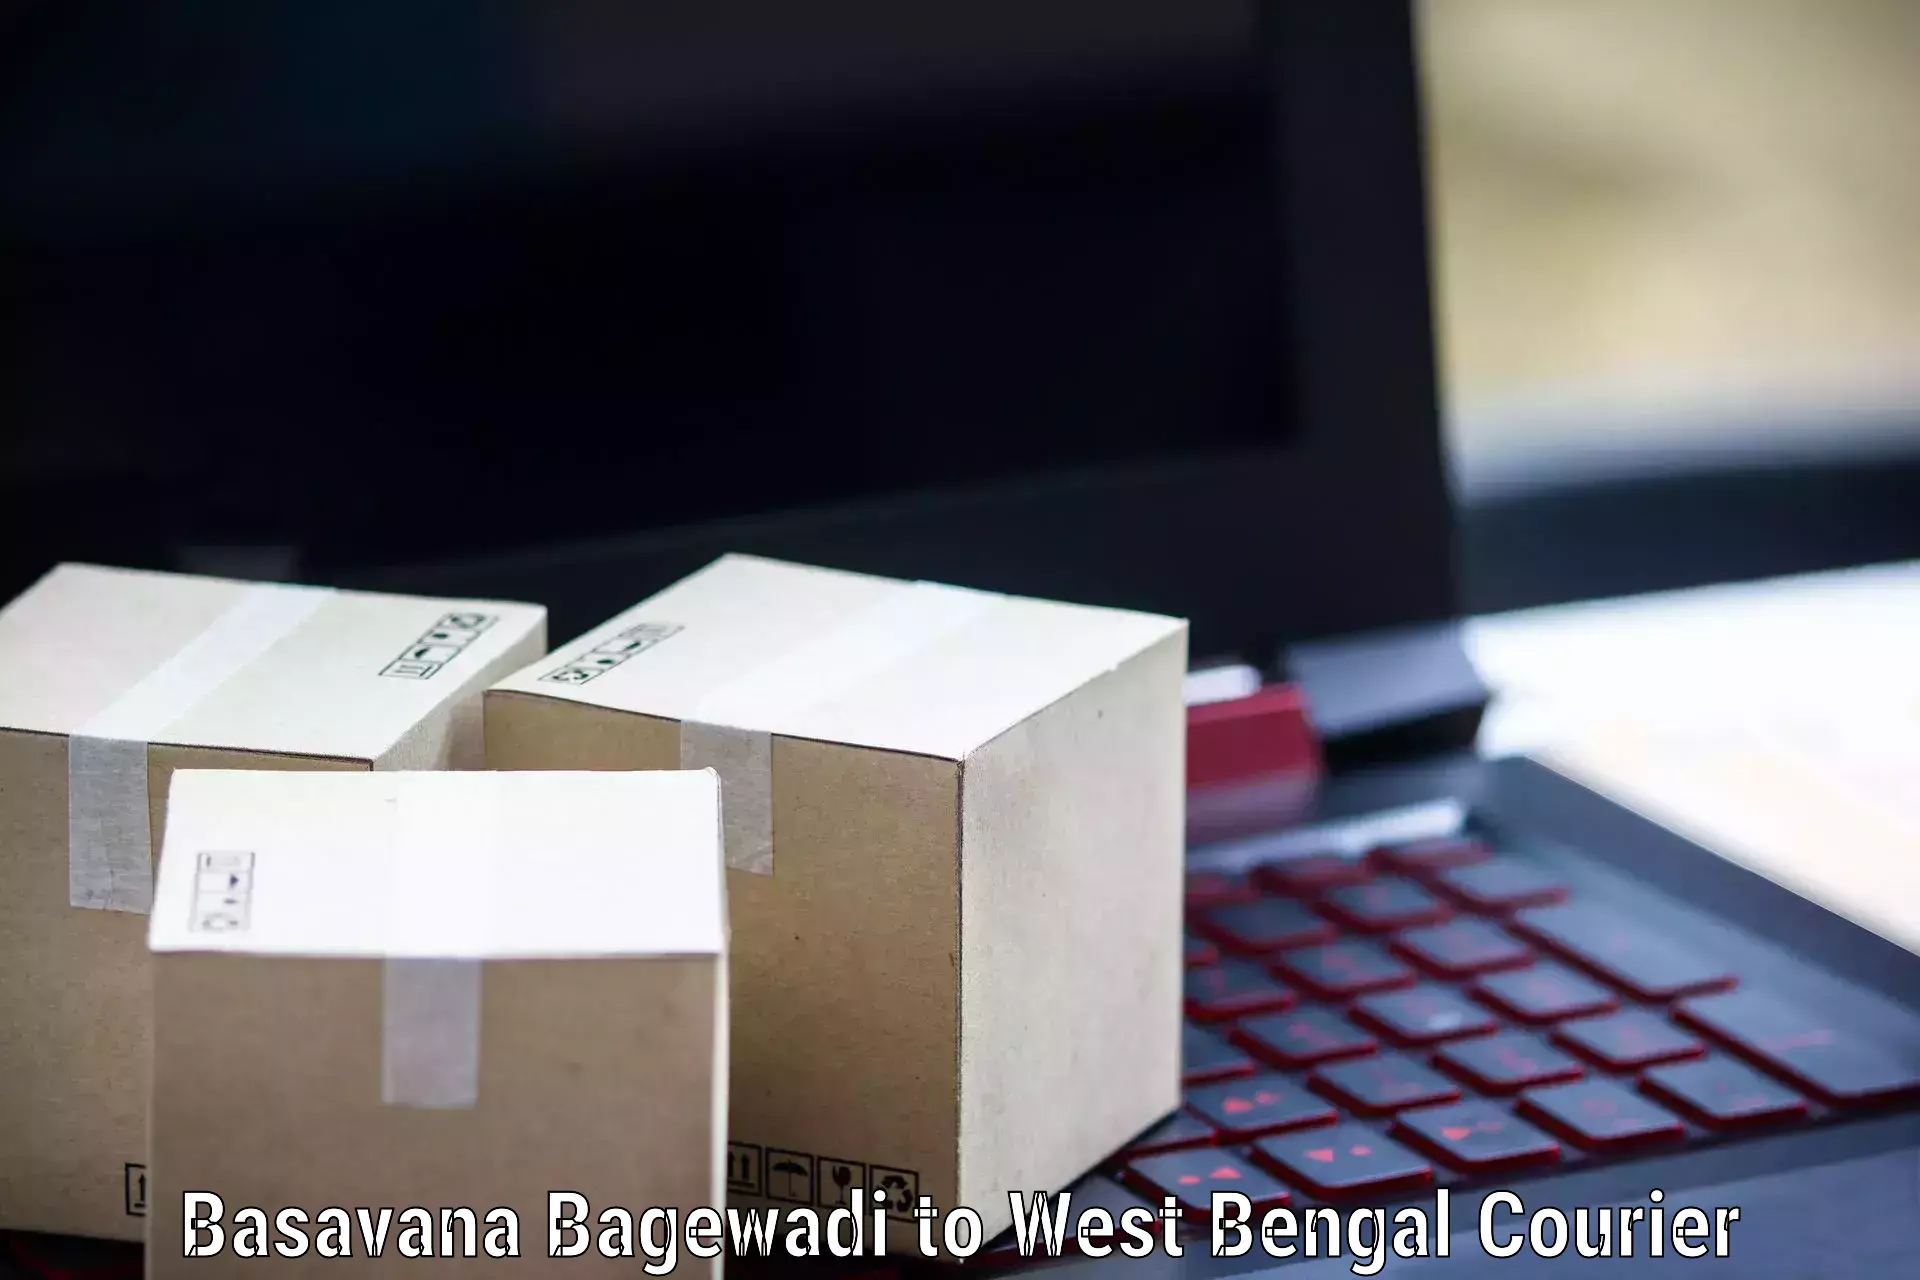 Global freight services Basavana Bagewadi to Jhalda